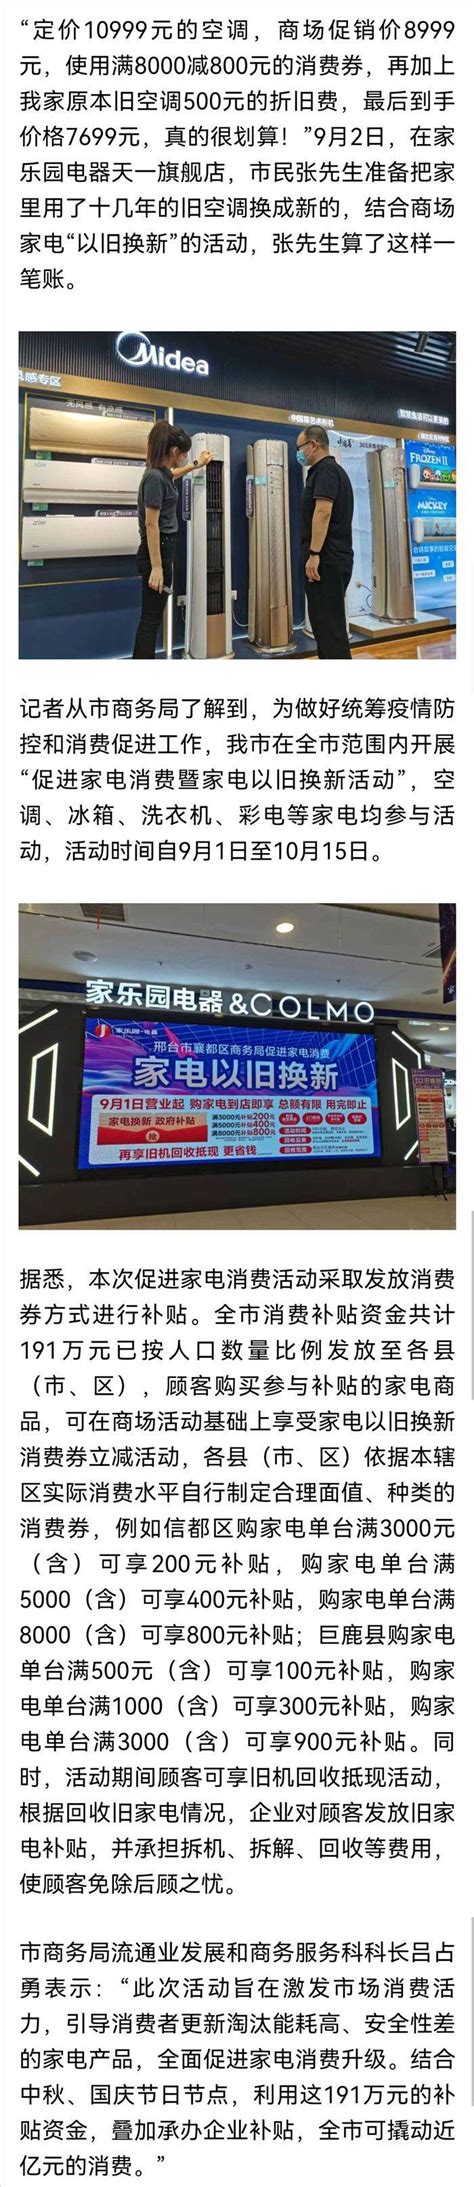 北京二手家具家电市场